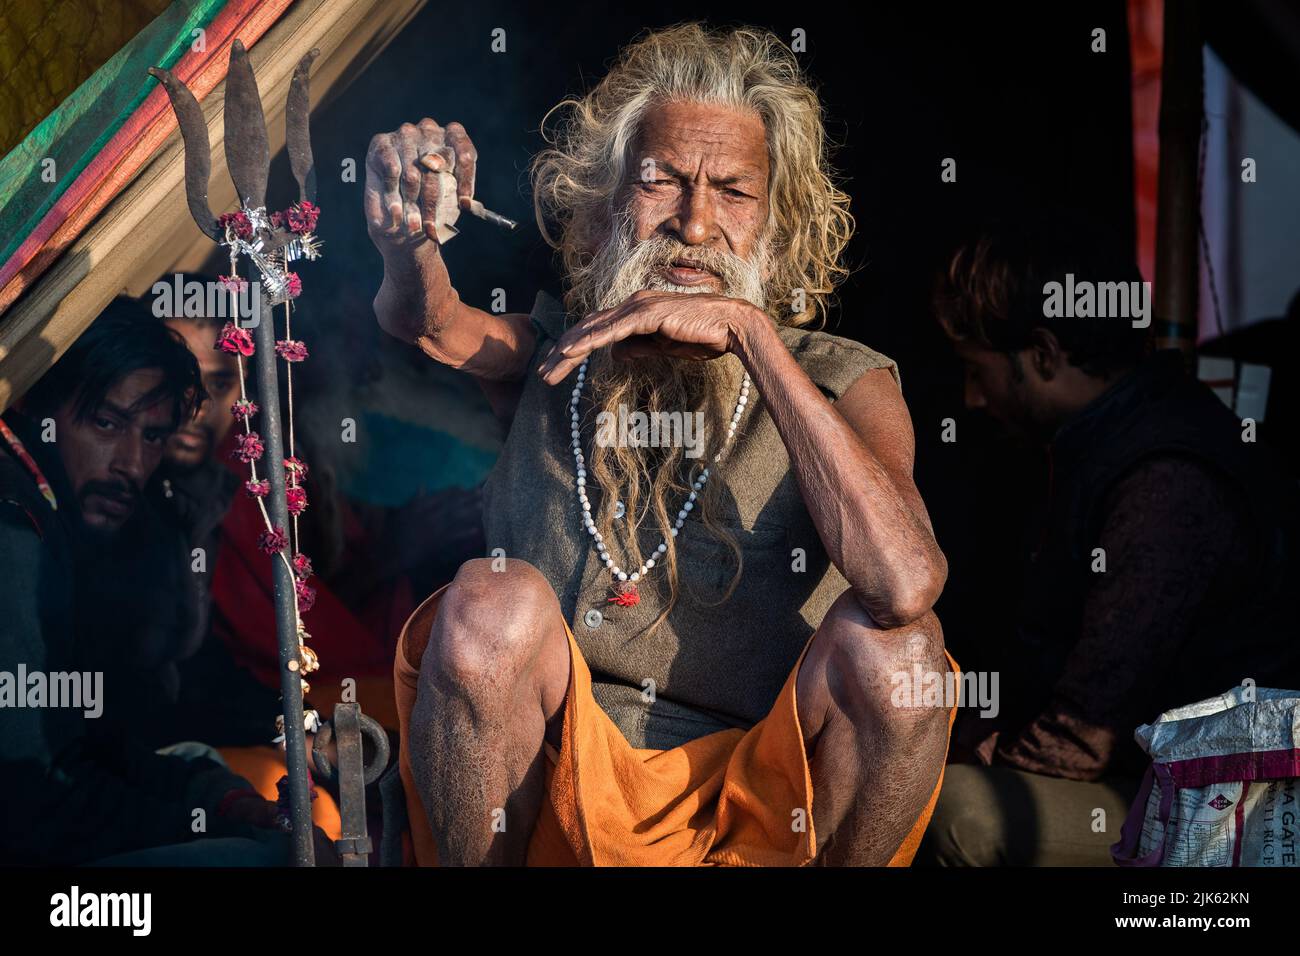 L'homme Saint indien Amar Bharati Urdhavaahu, qui a gardé son bras levé pendant plus de 40 ans en l'honneur de Dieu hindou Shiva, au Festival Kumbh Mela en Inde. Banque D'Images